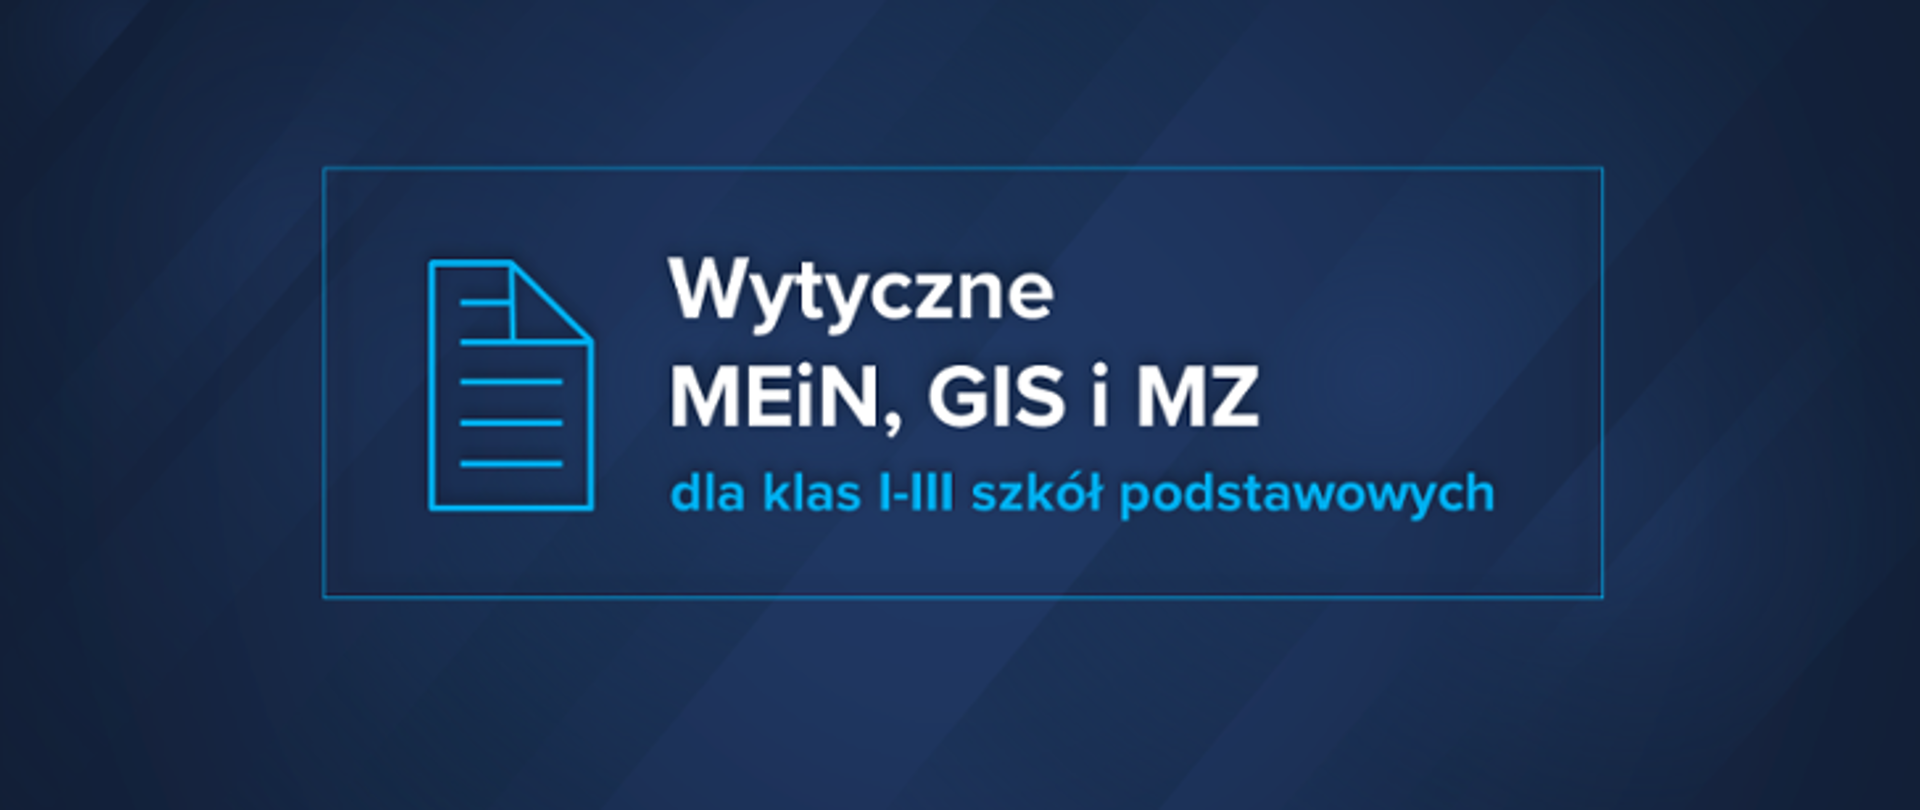 Wytyczne MEiN, GIS i MZ logo